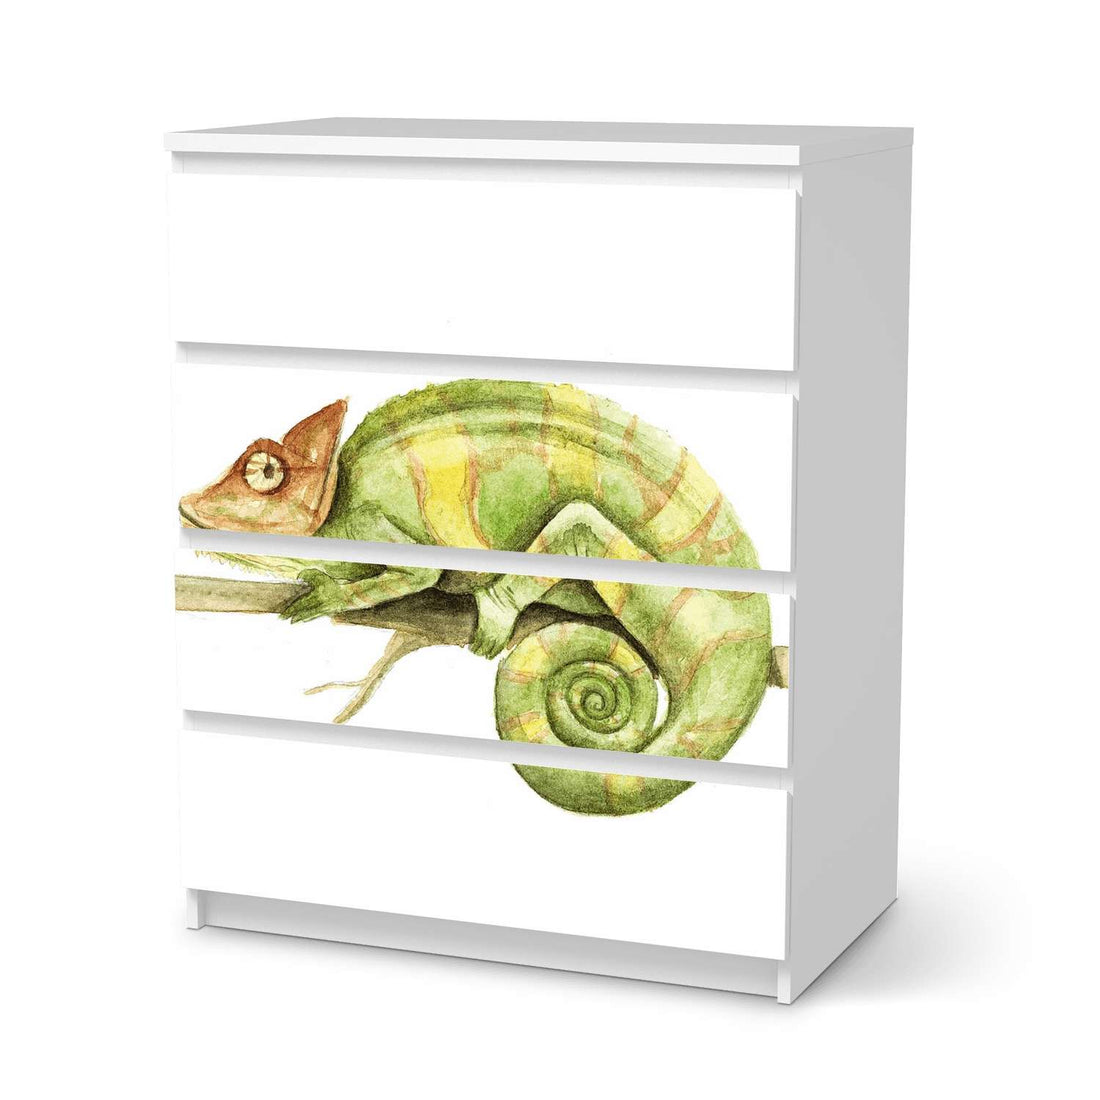 Folie für Möbel Chameleon - IKEA Malm Kommode 4 Schubladen  - weiss